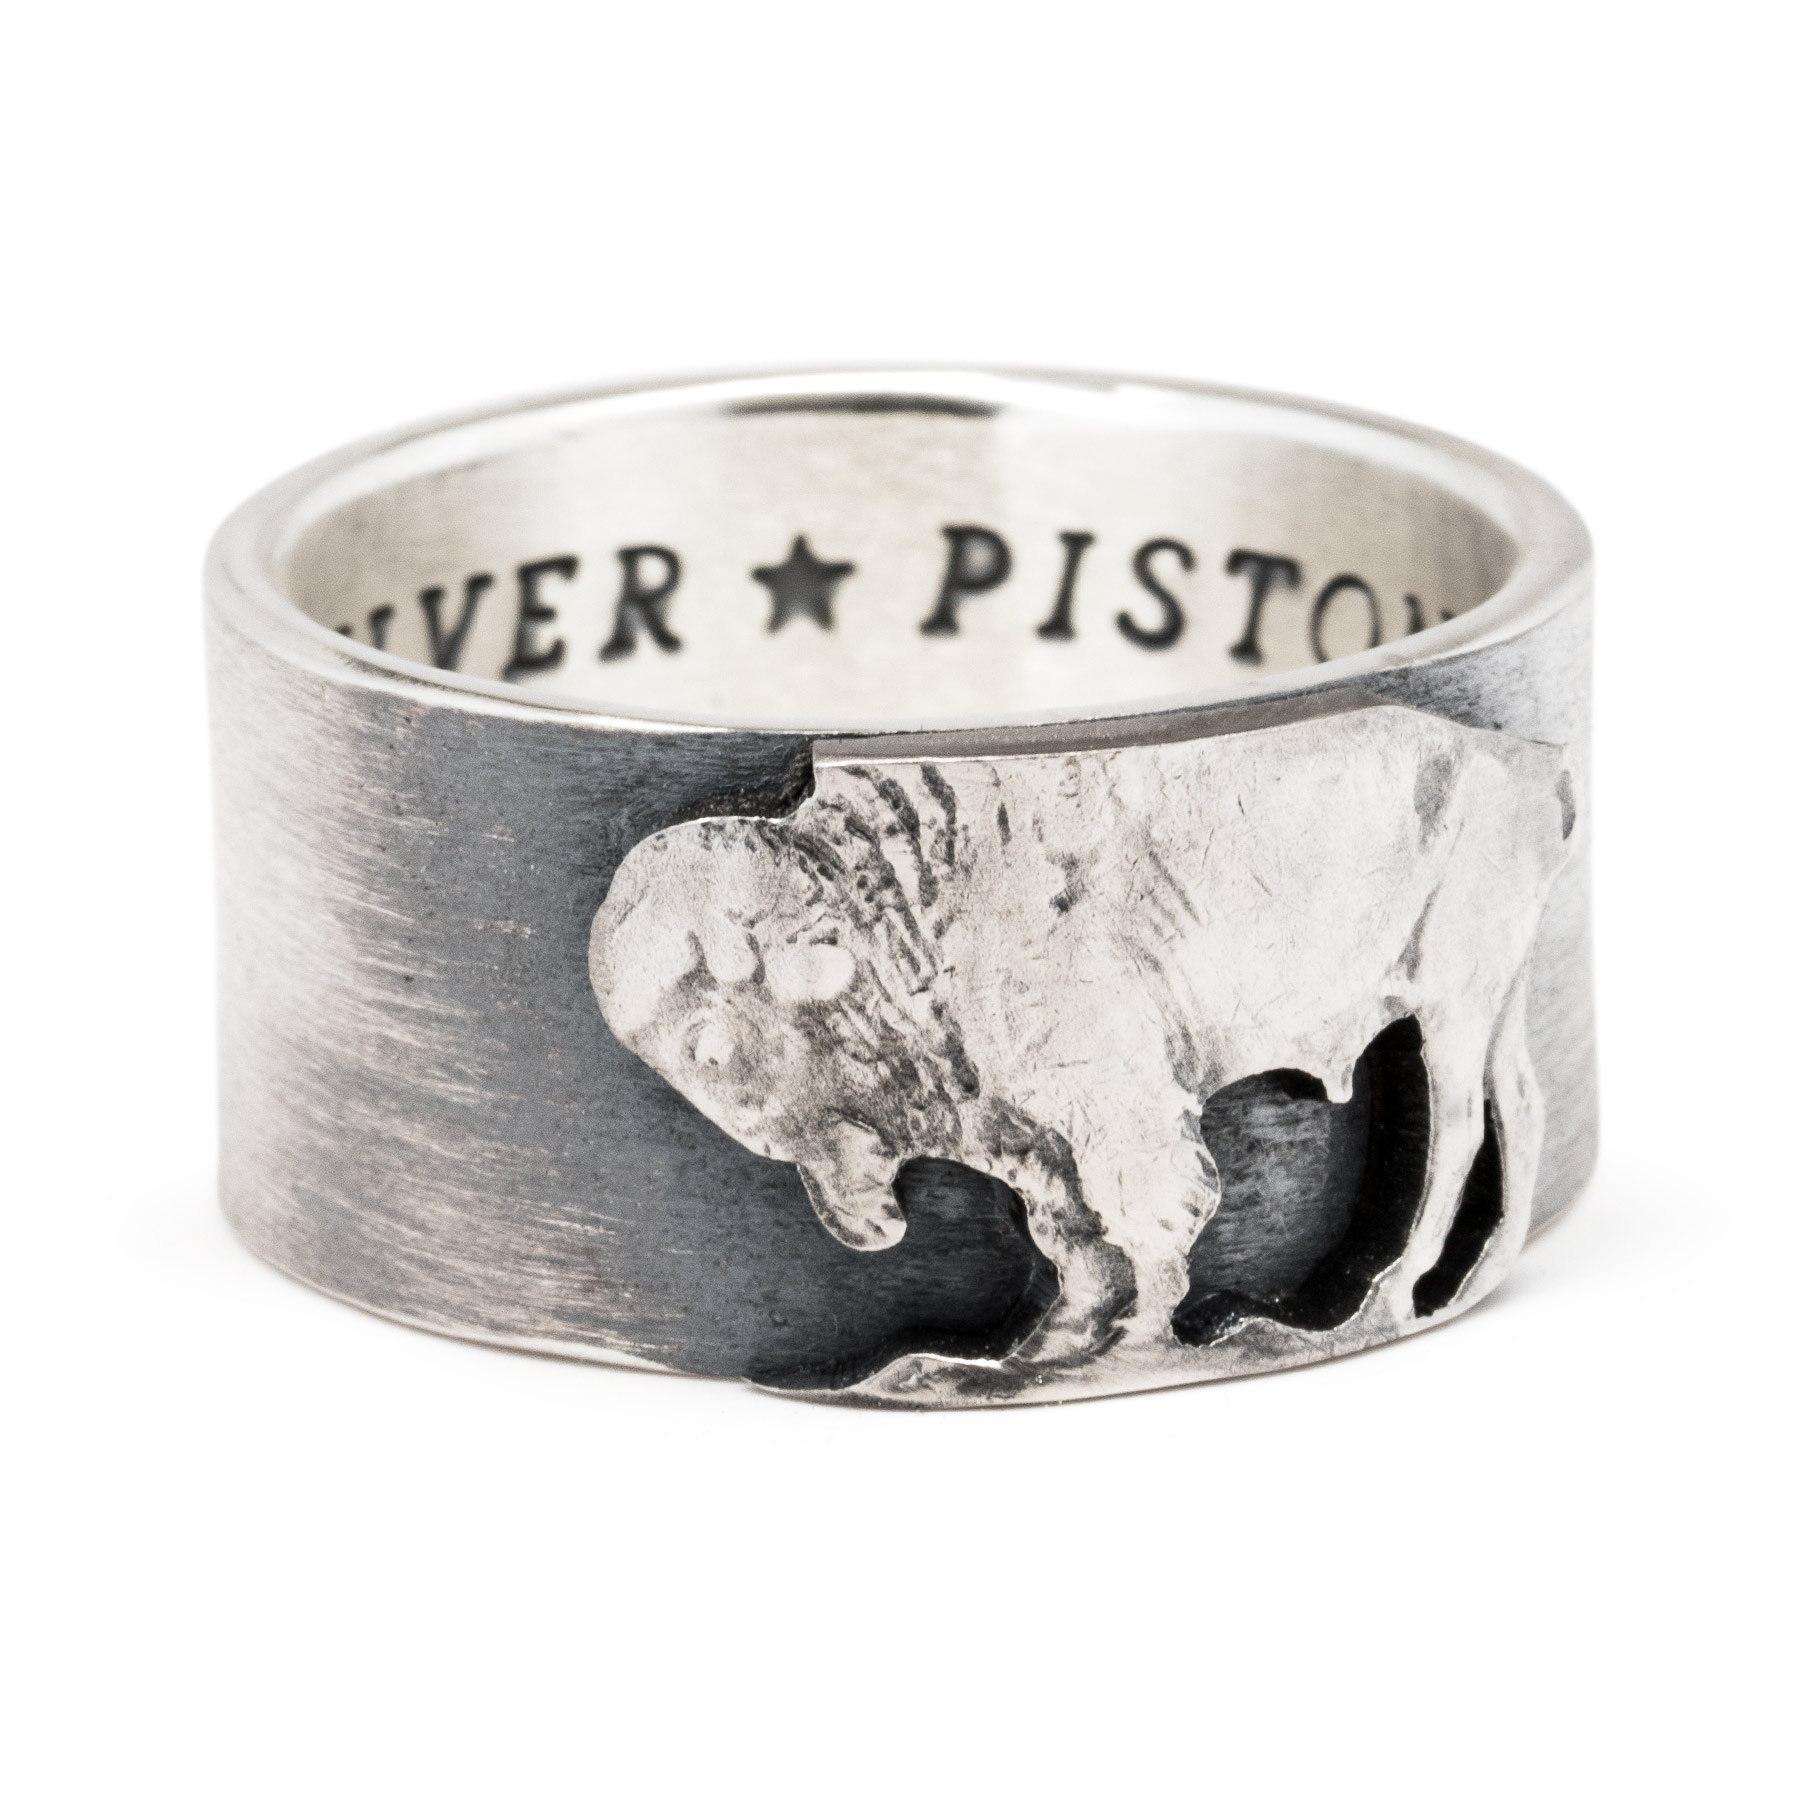 Concreet Idool Ondeugd Buffalo/Indian Nickel Ring — Silver Piston